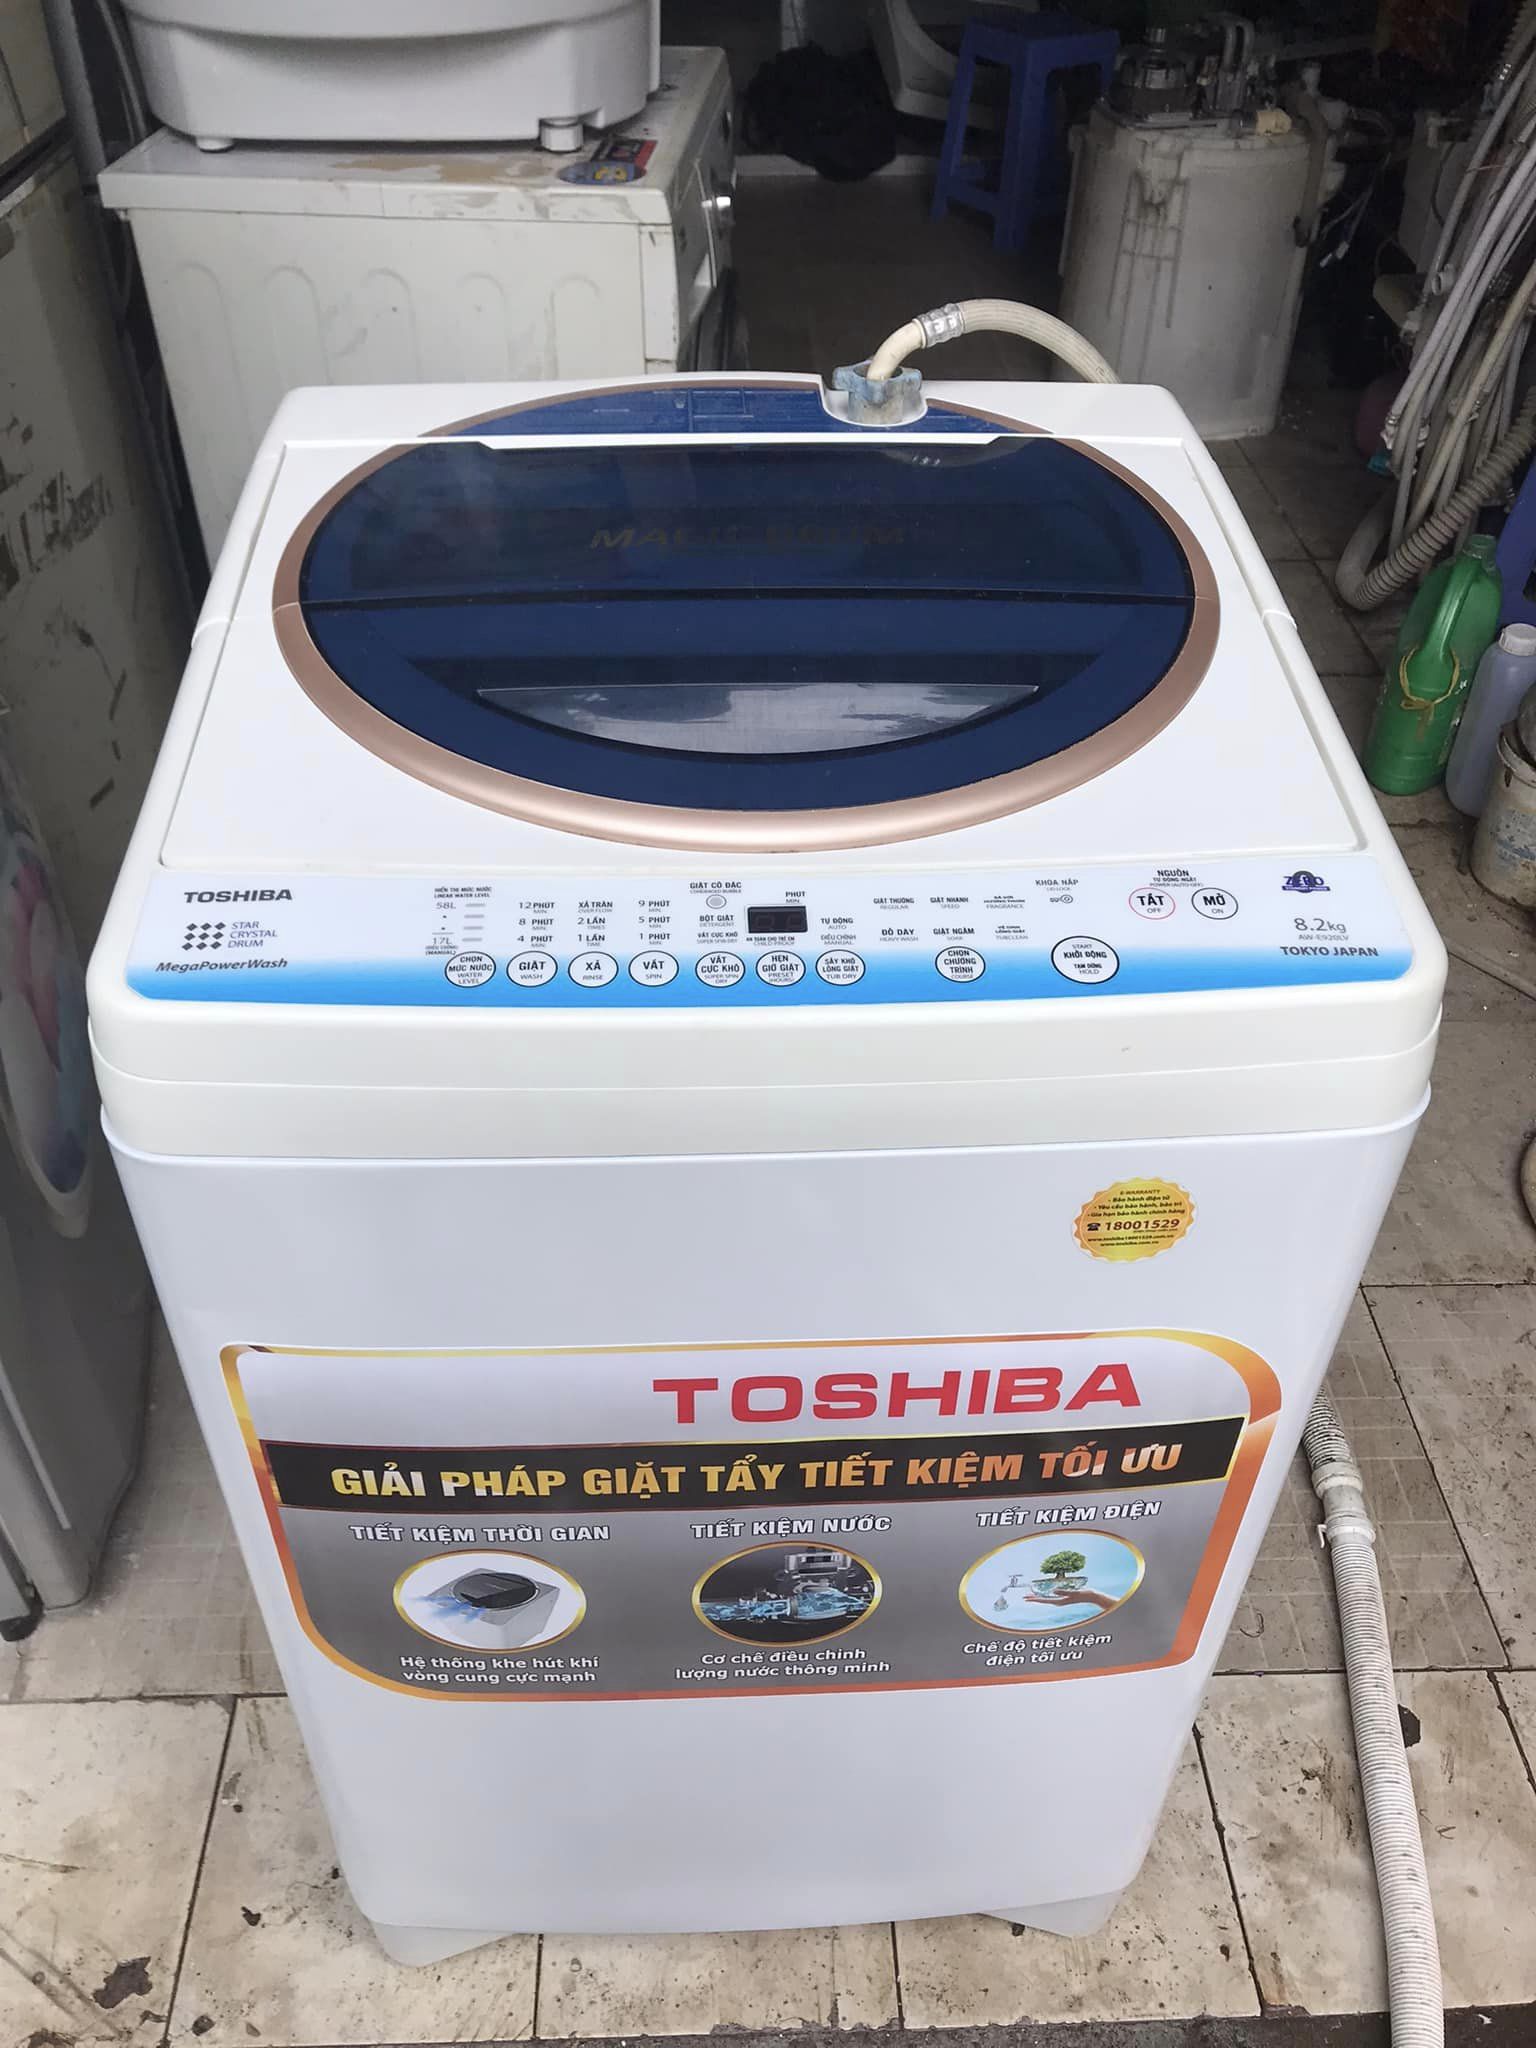 Máy giặt Toshiba (8.2kg) Aw-MF920LV